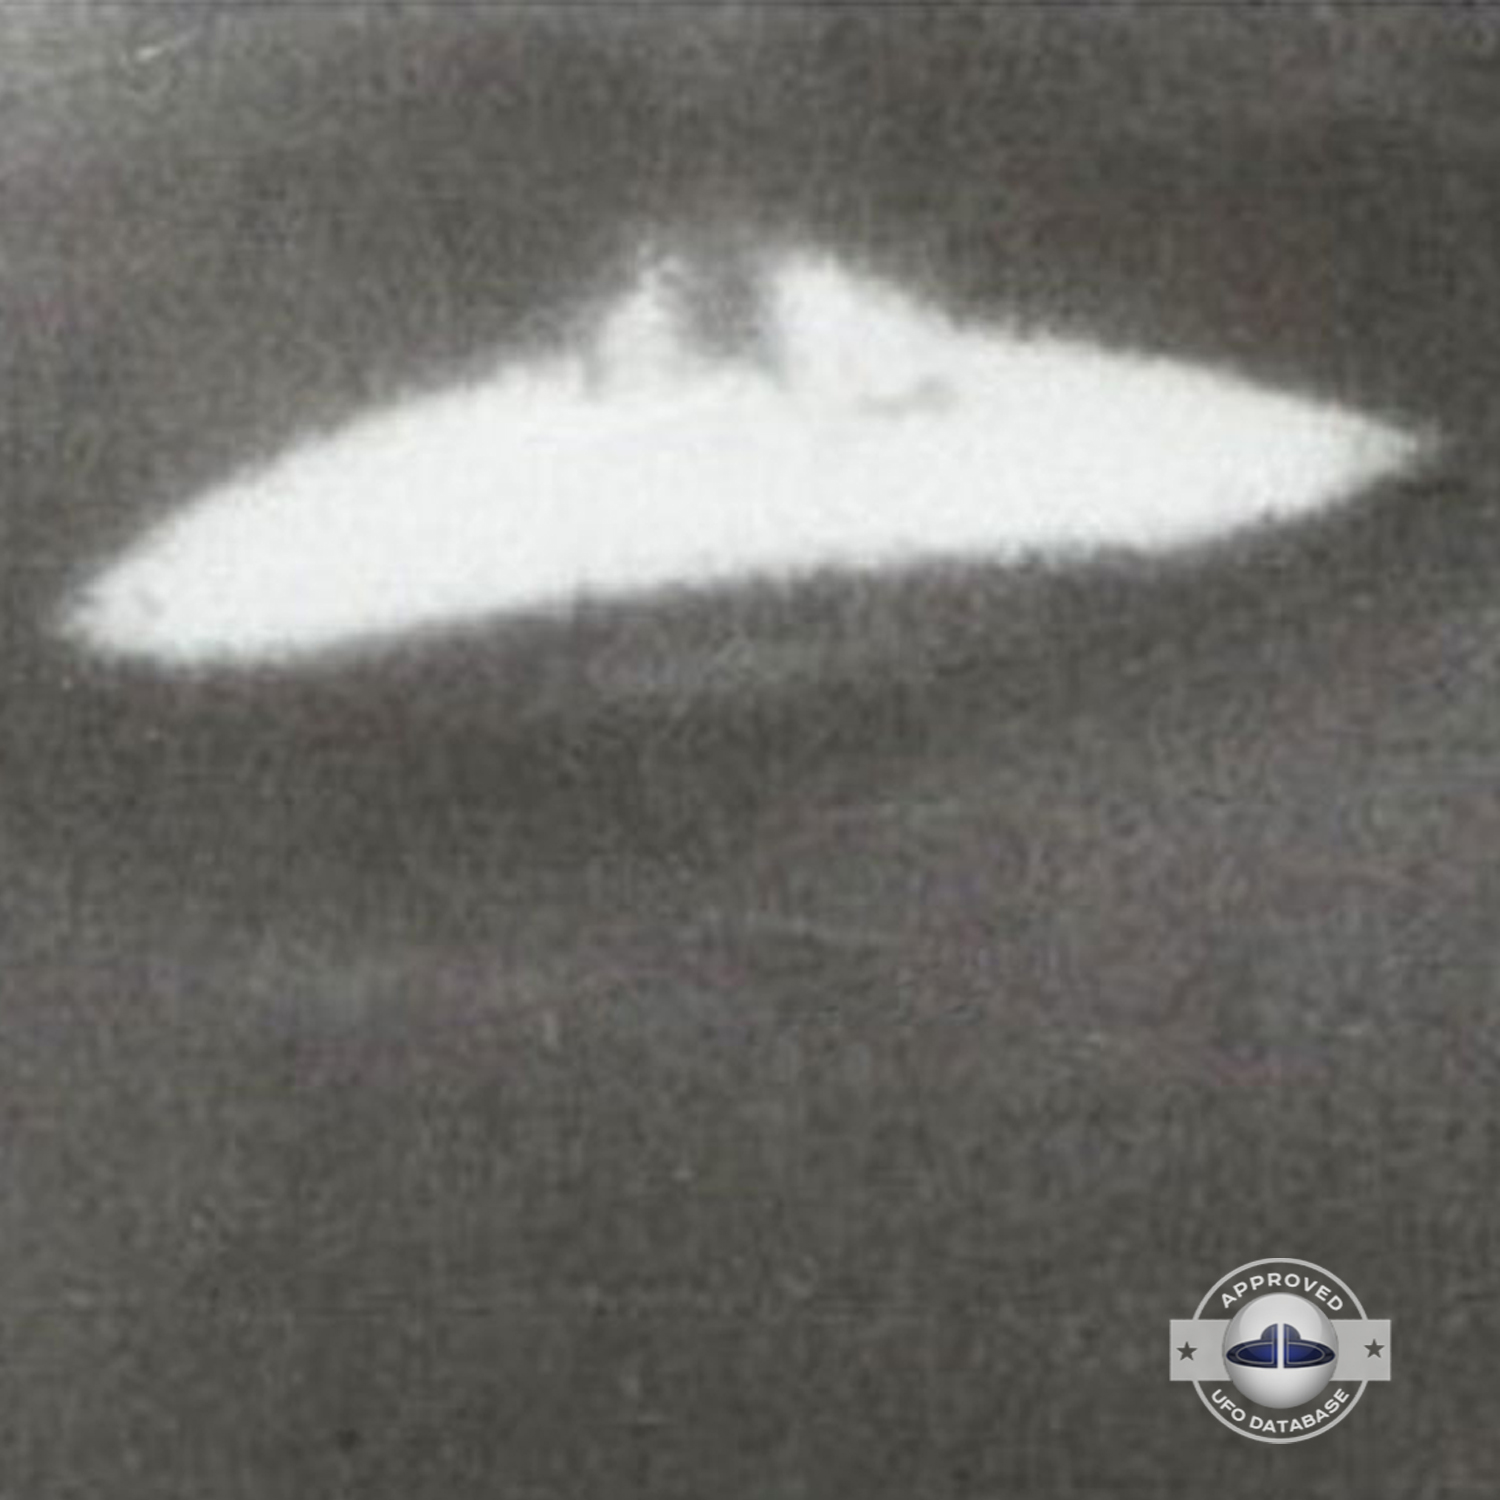 Russia UFO sighting| Dalnegorsk, Primorsky Krai UFO picture | 1989 UFO Picture #141-3